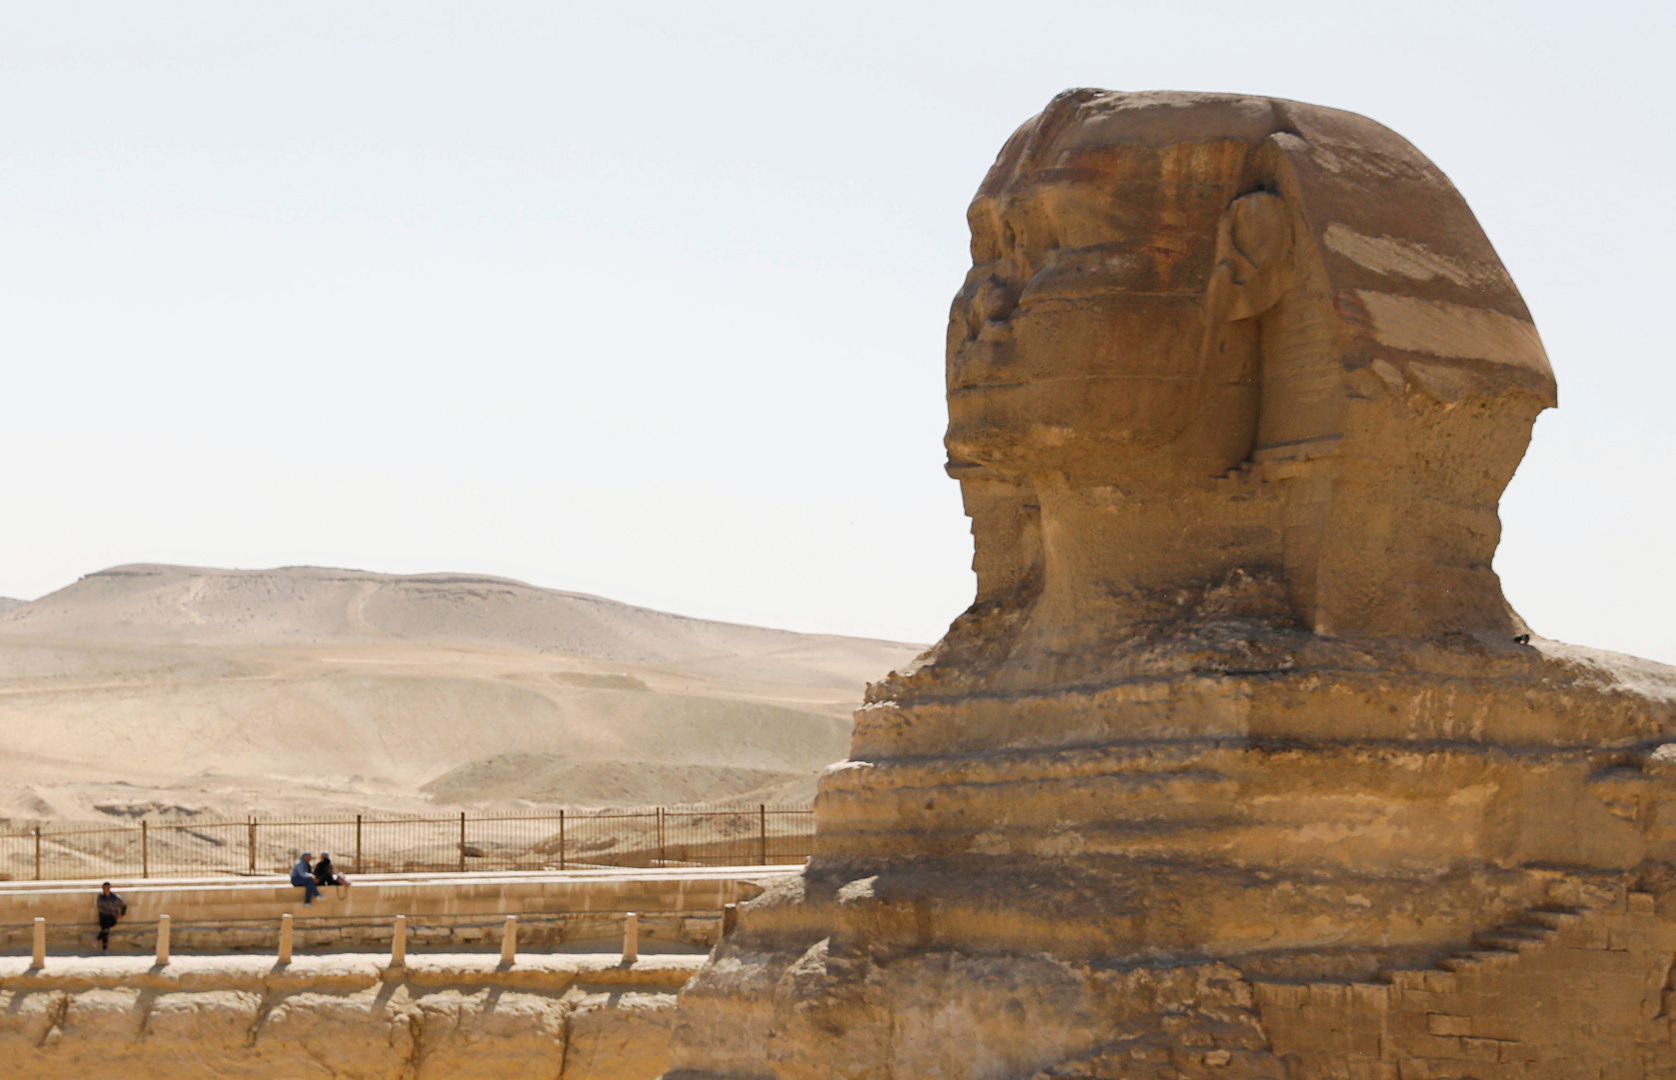 زاهي حواس: مدير المتحف البريطاني قام بسرقة آثار مصر بحجة حمايتها